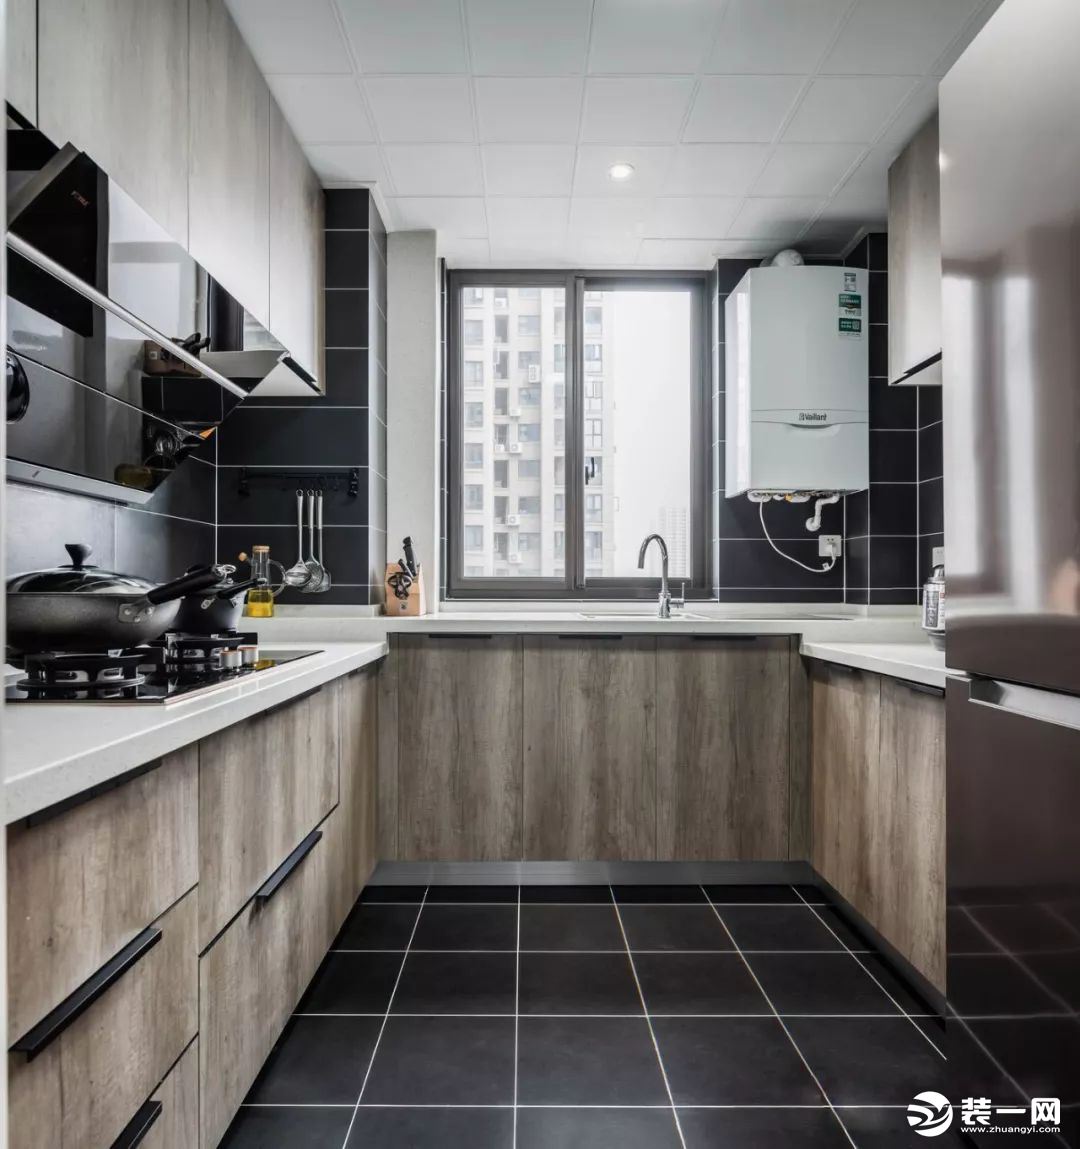 黑色的地板和壁砖让厨房不显脏乱，便于收拾打理。白色的天花板与地面的黑色地砖遥相呼应，白色大理石操作台